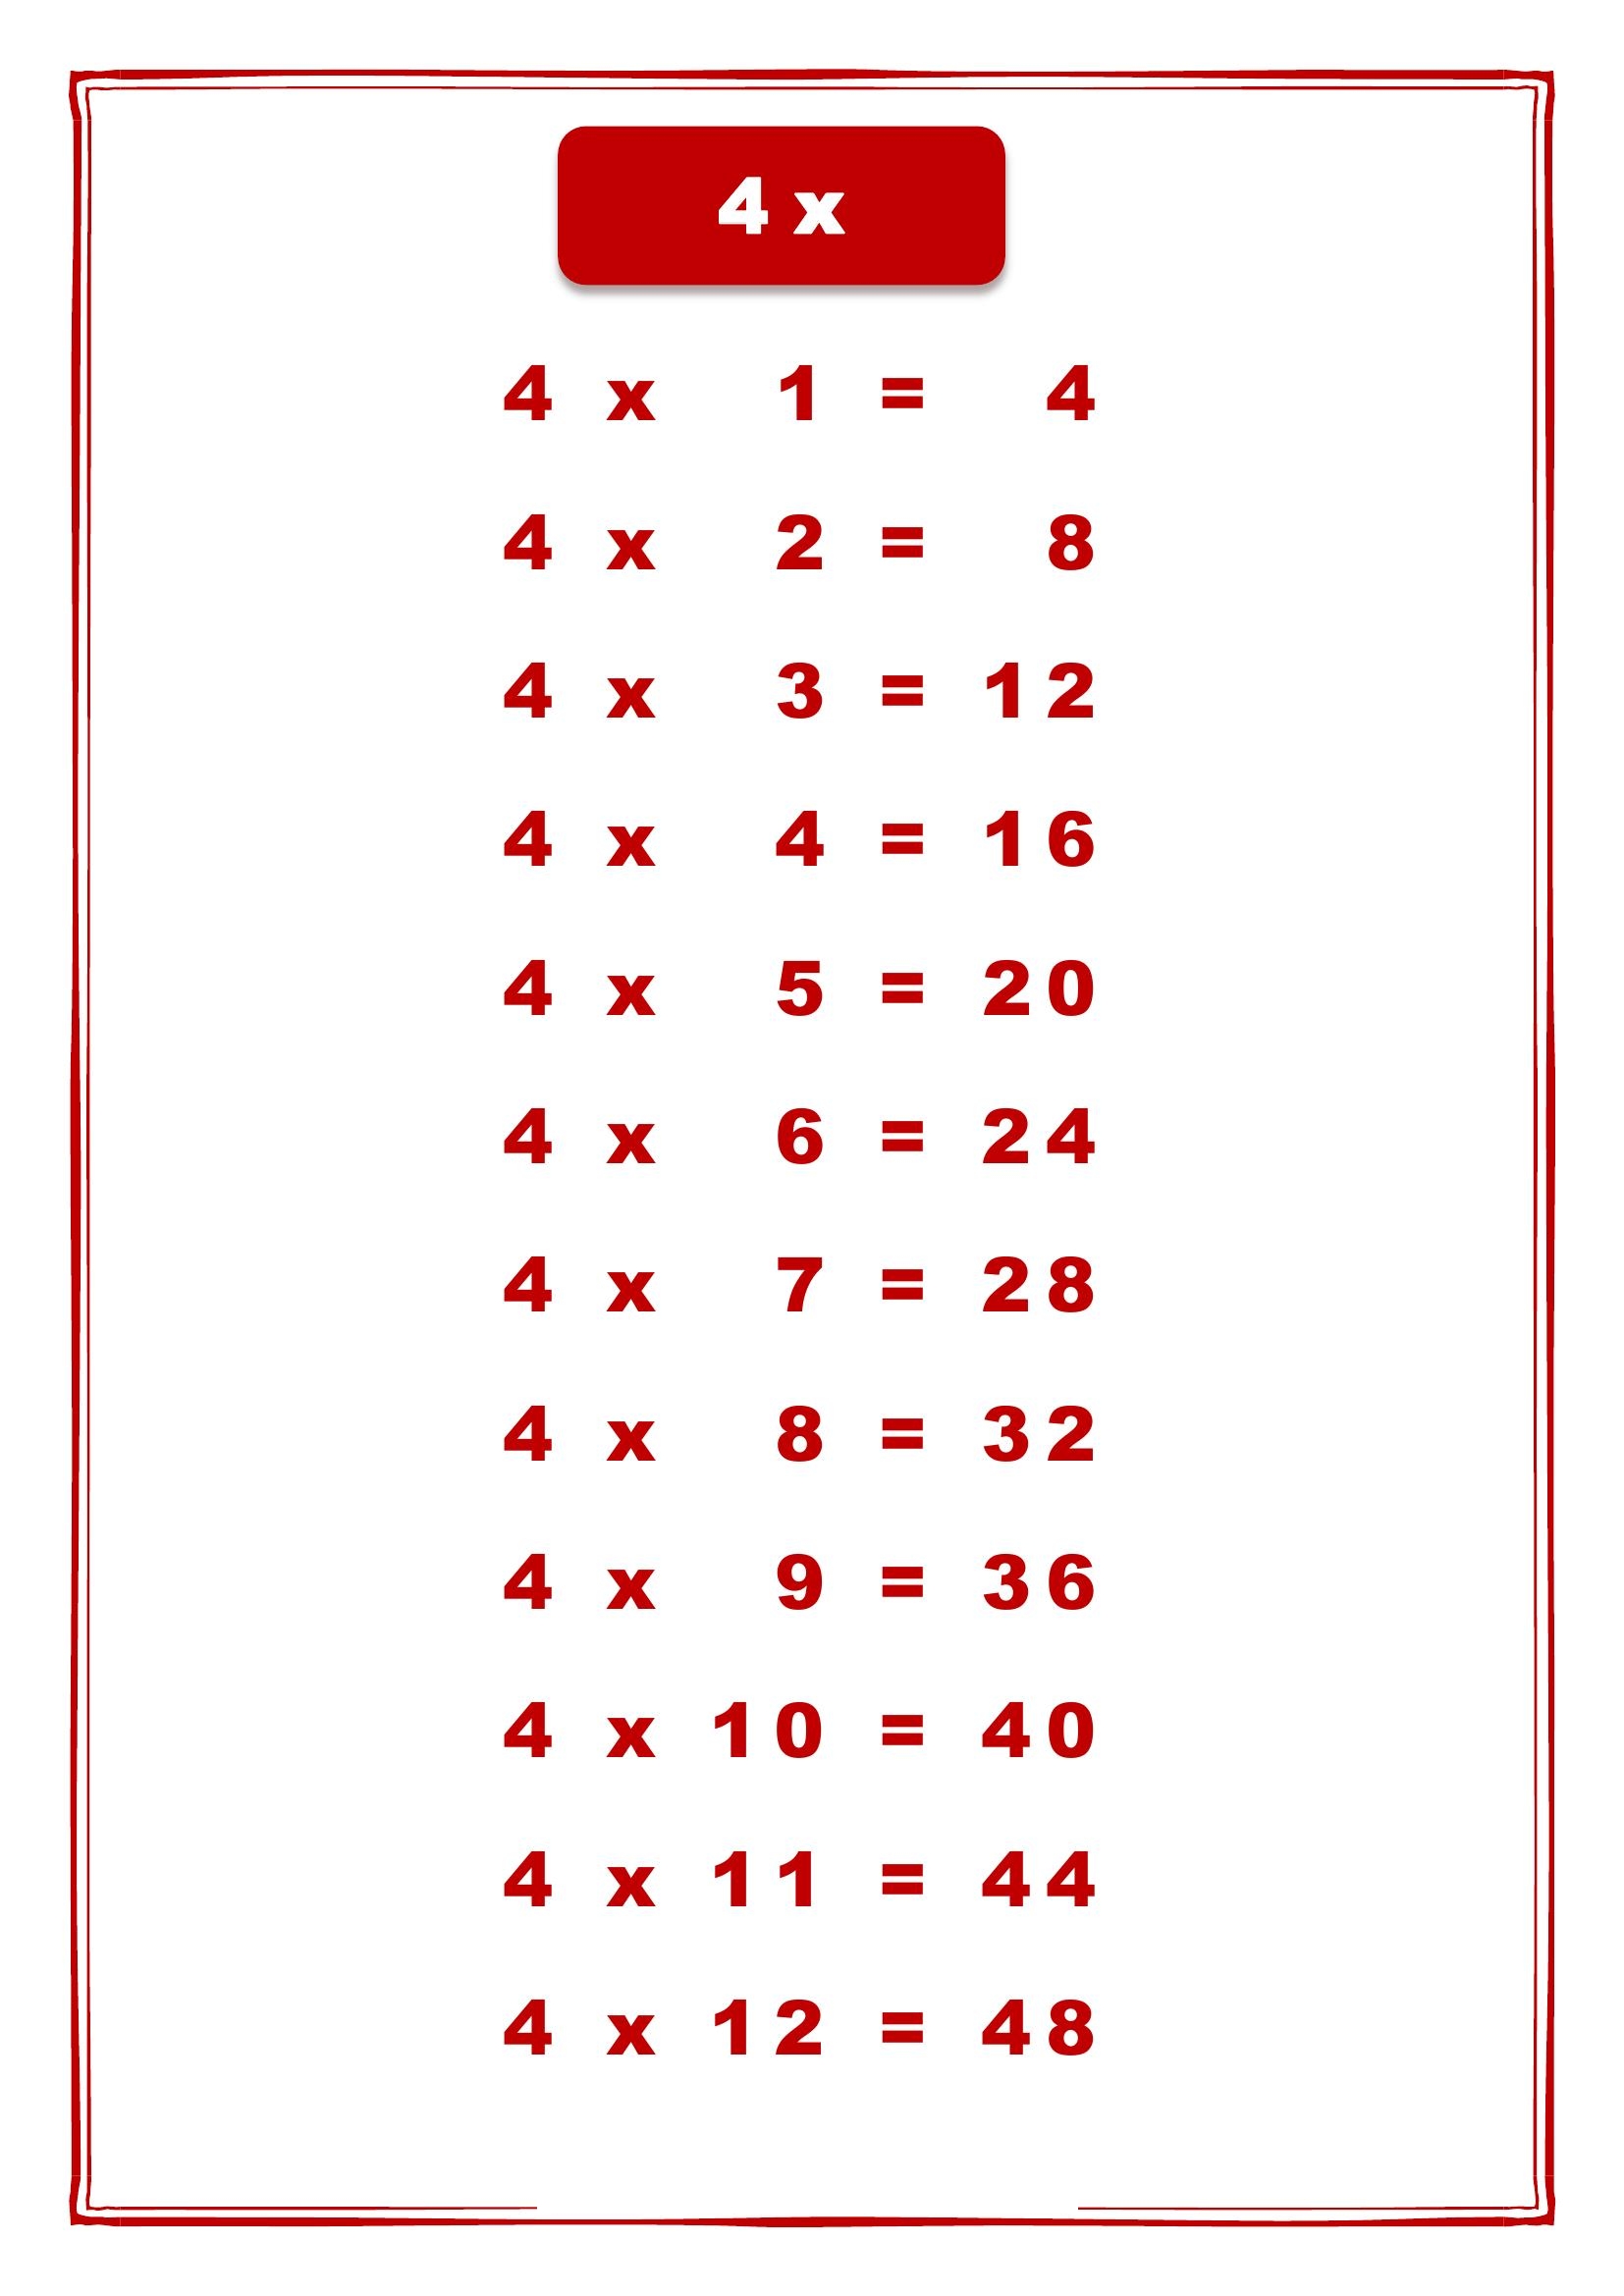 таблица умножения на 4